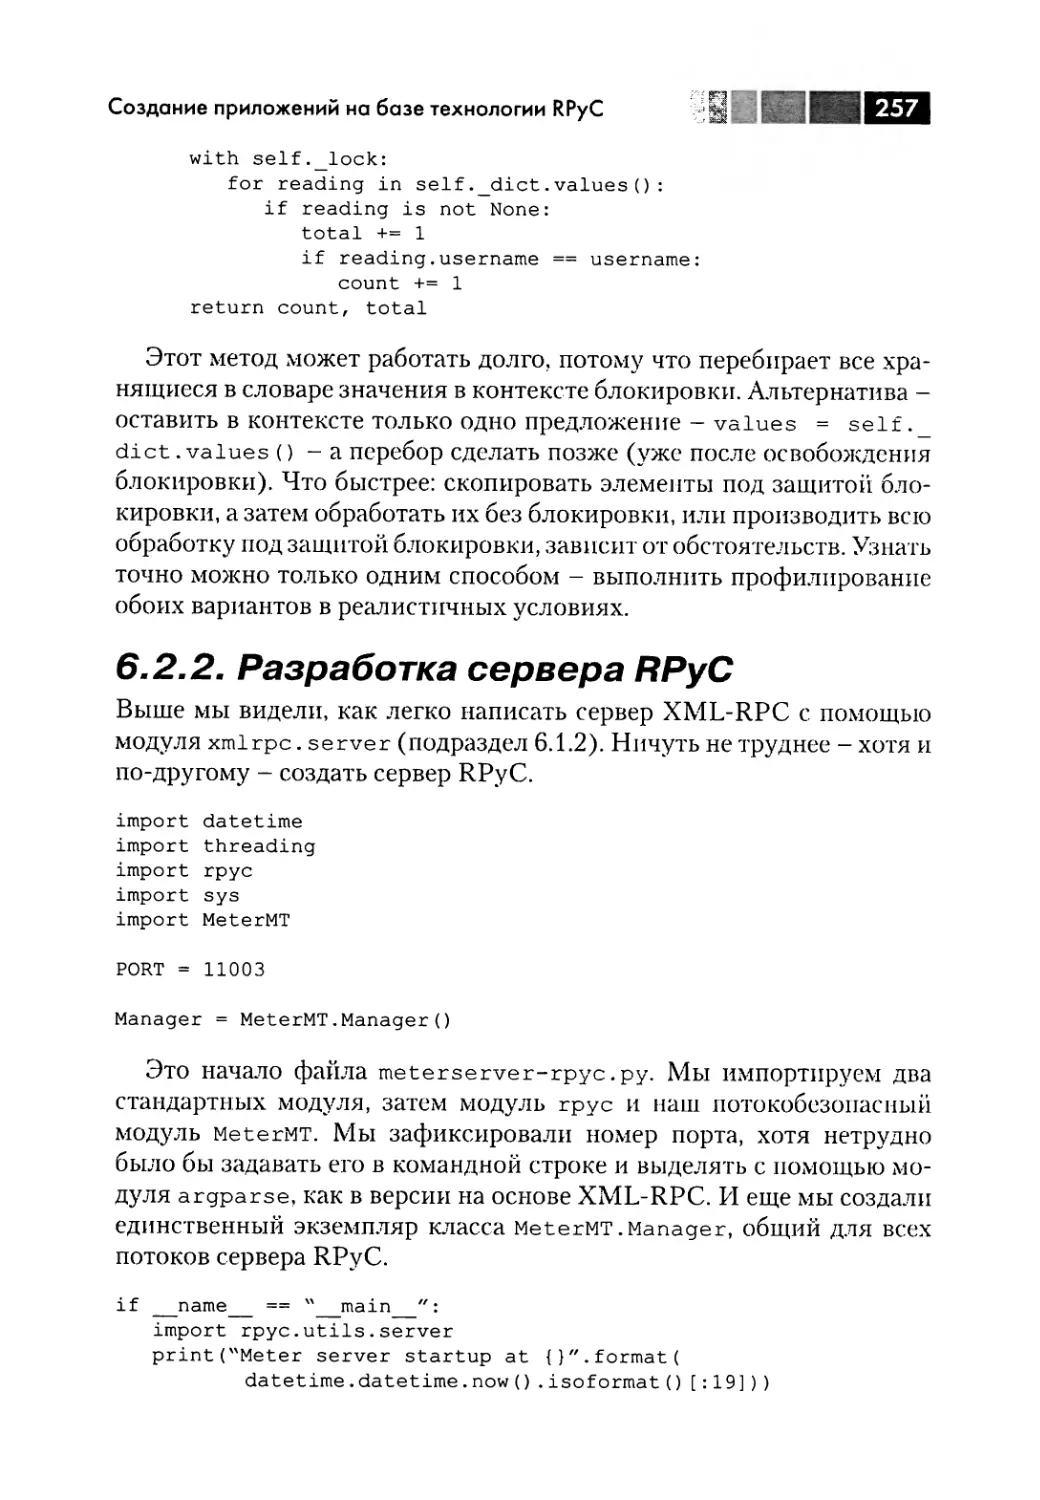 6.2.2. Разработка сервера RPyC